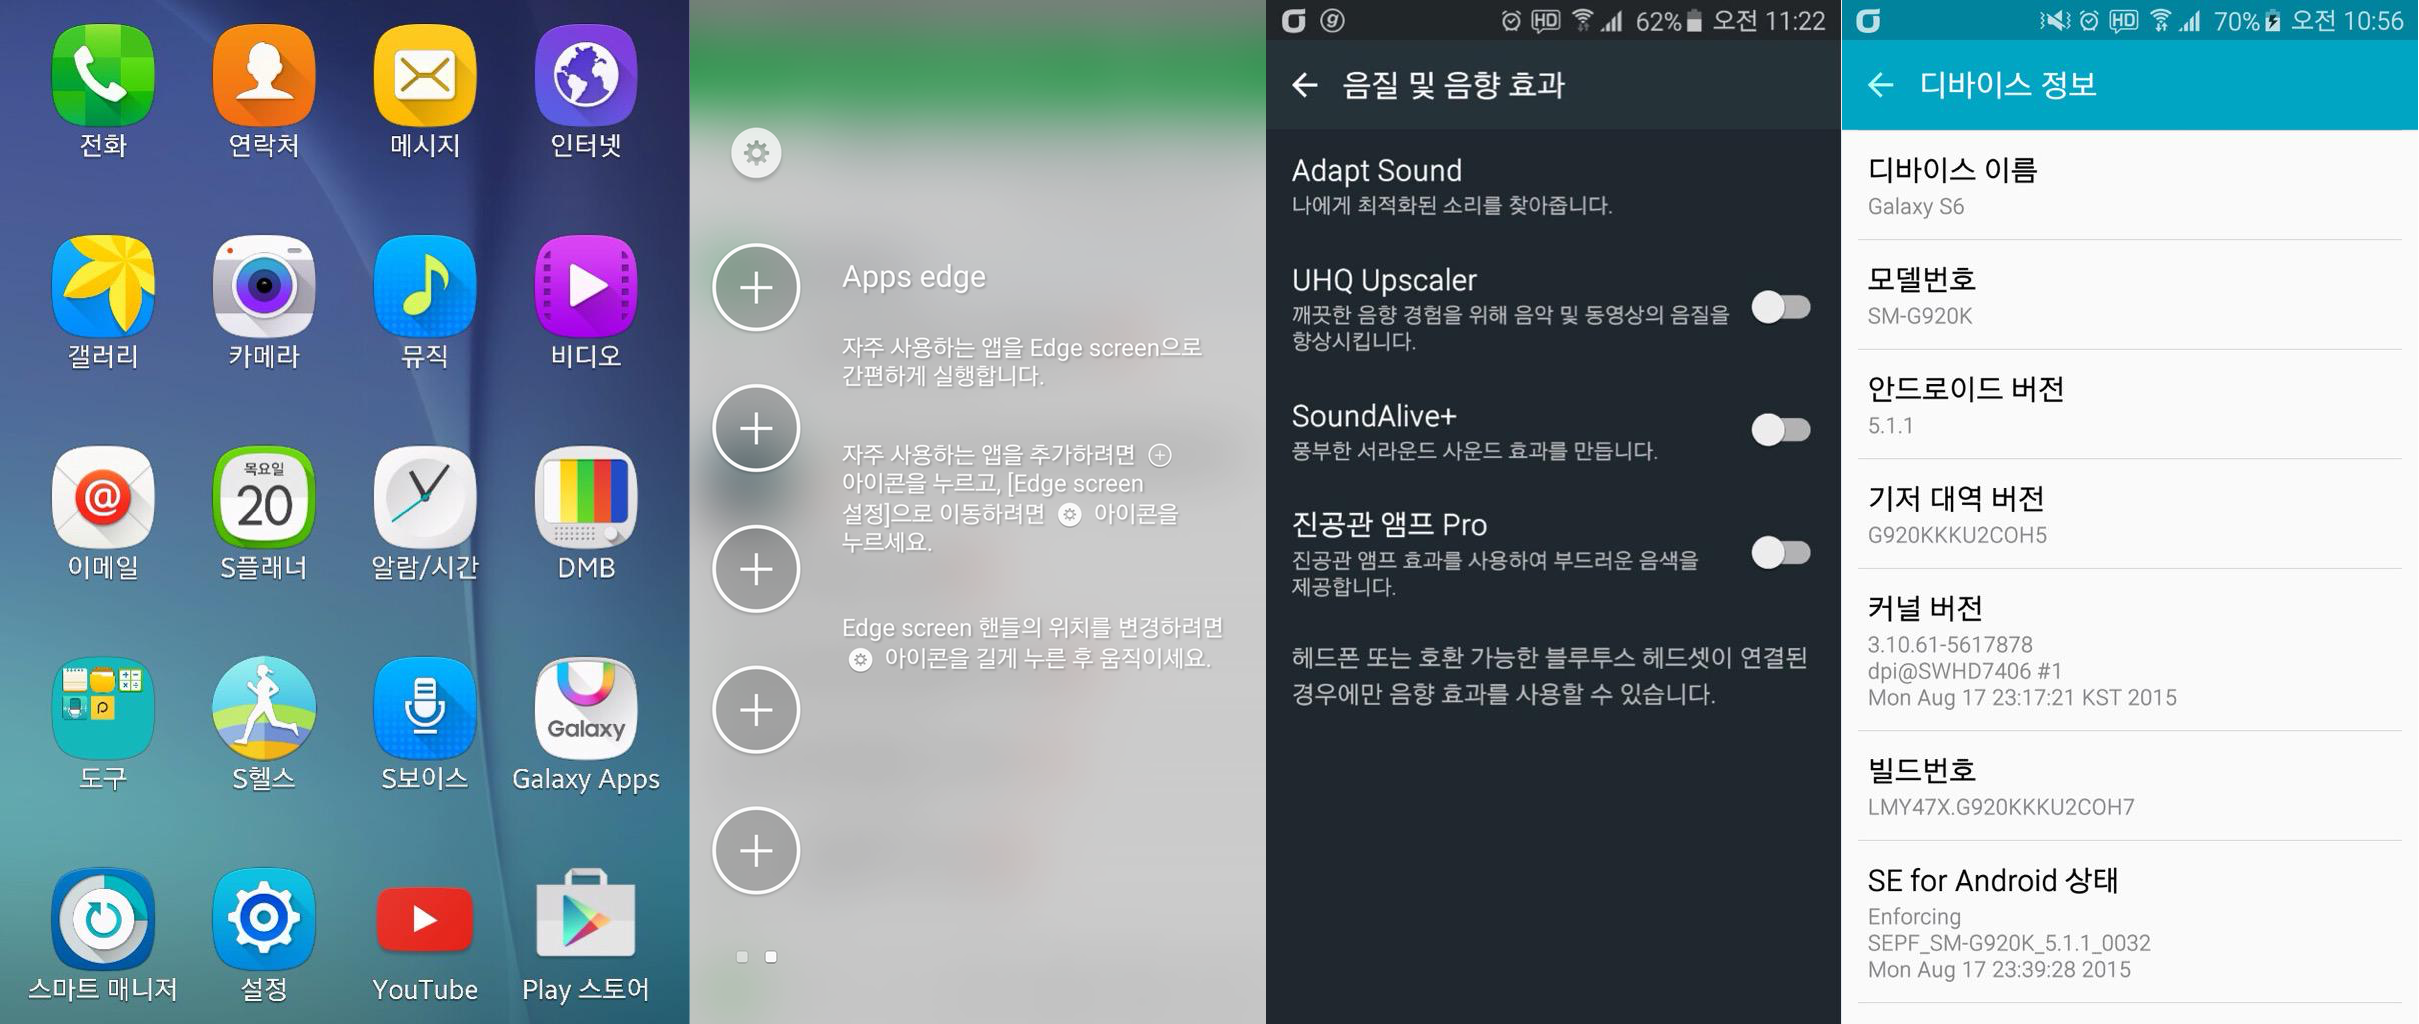 Samsung system bios update